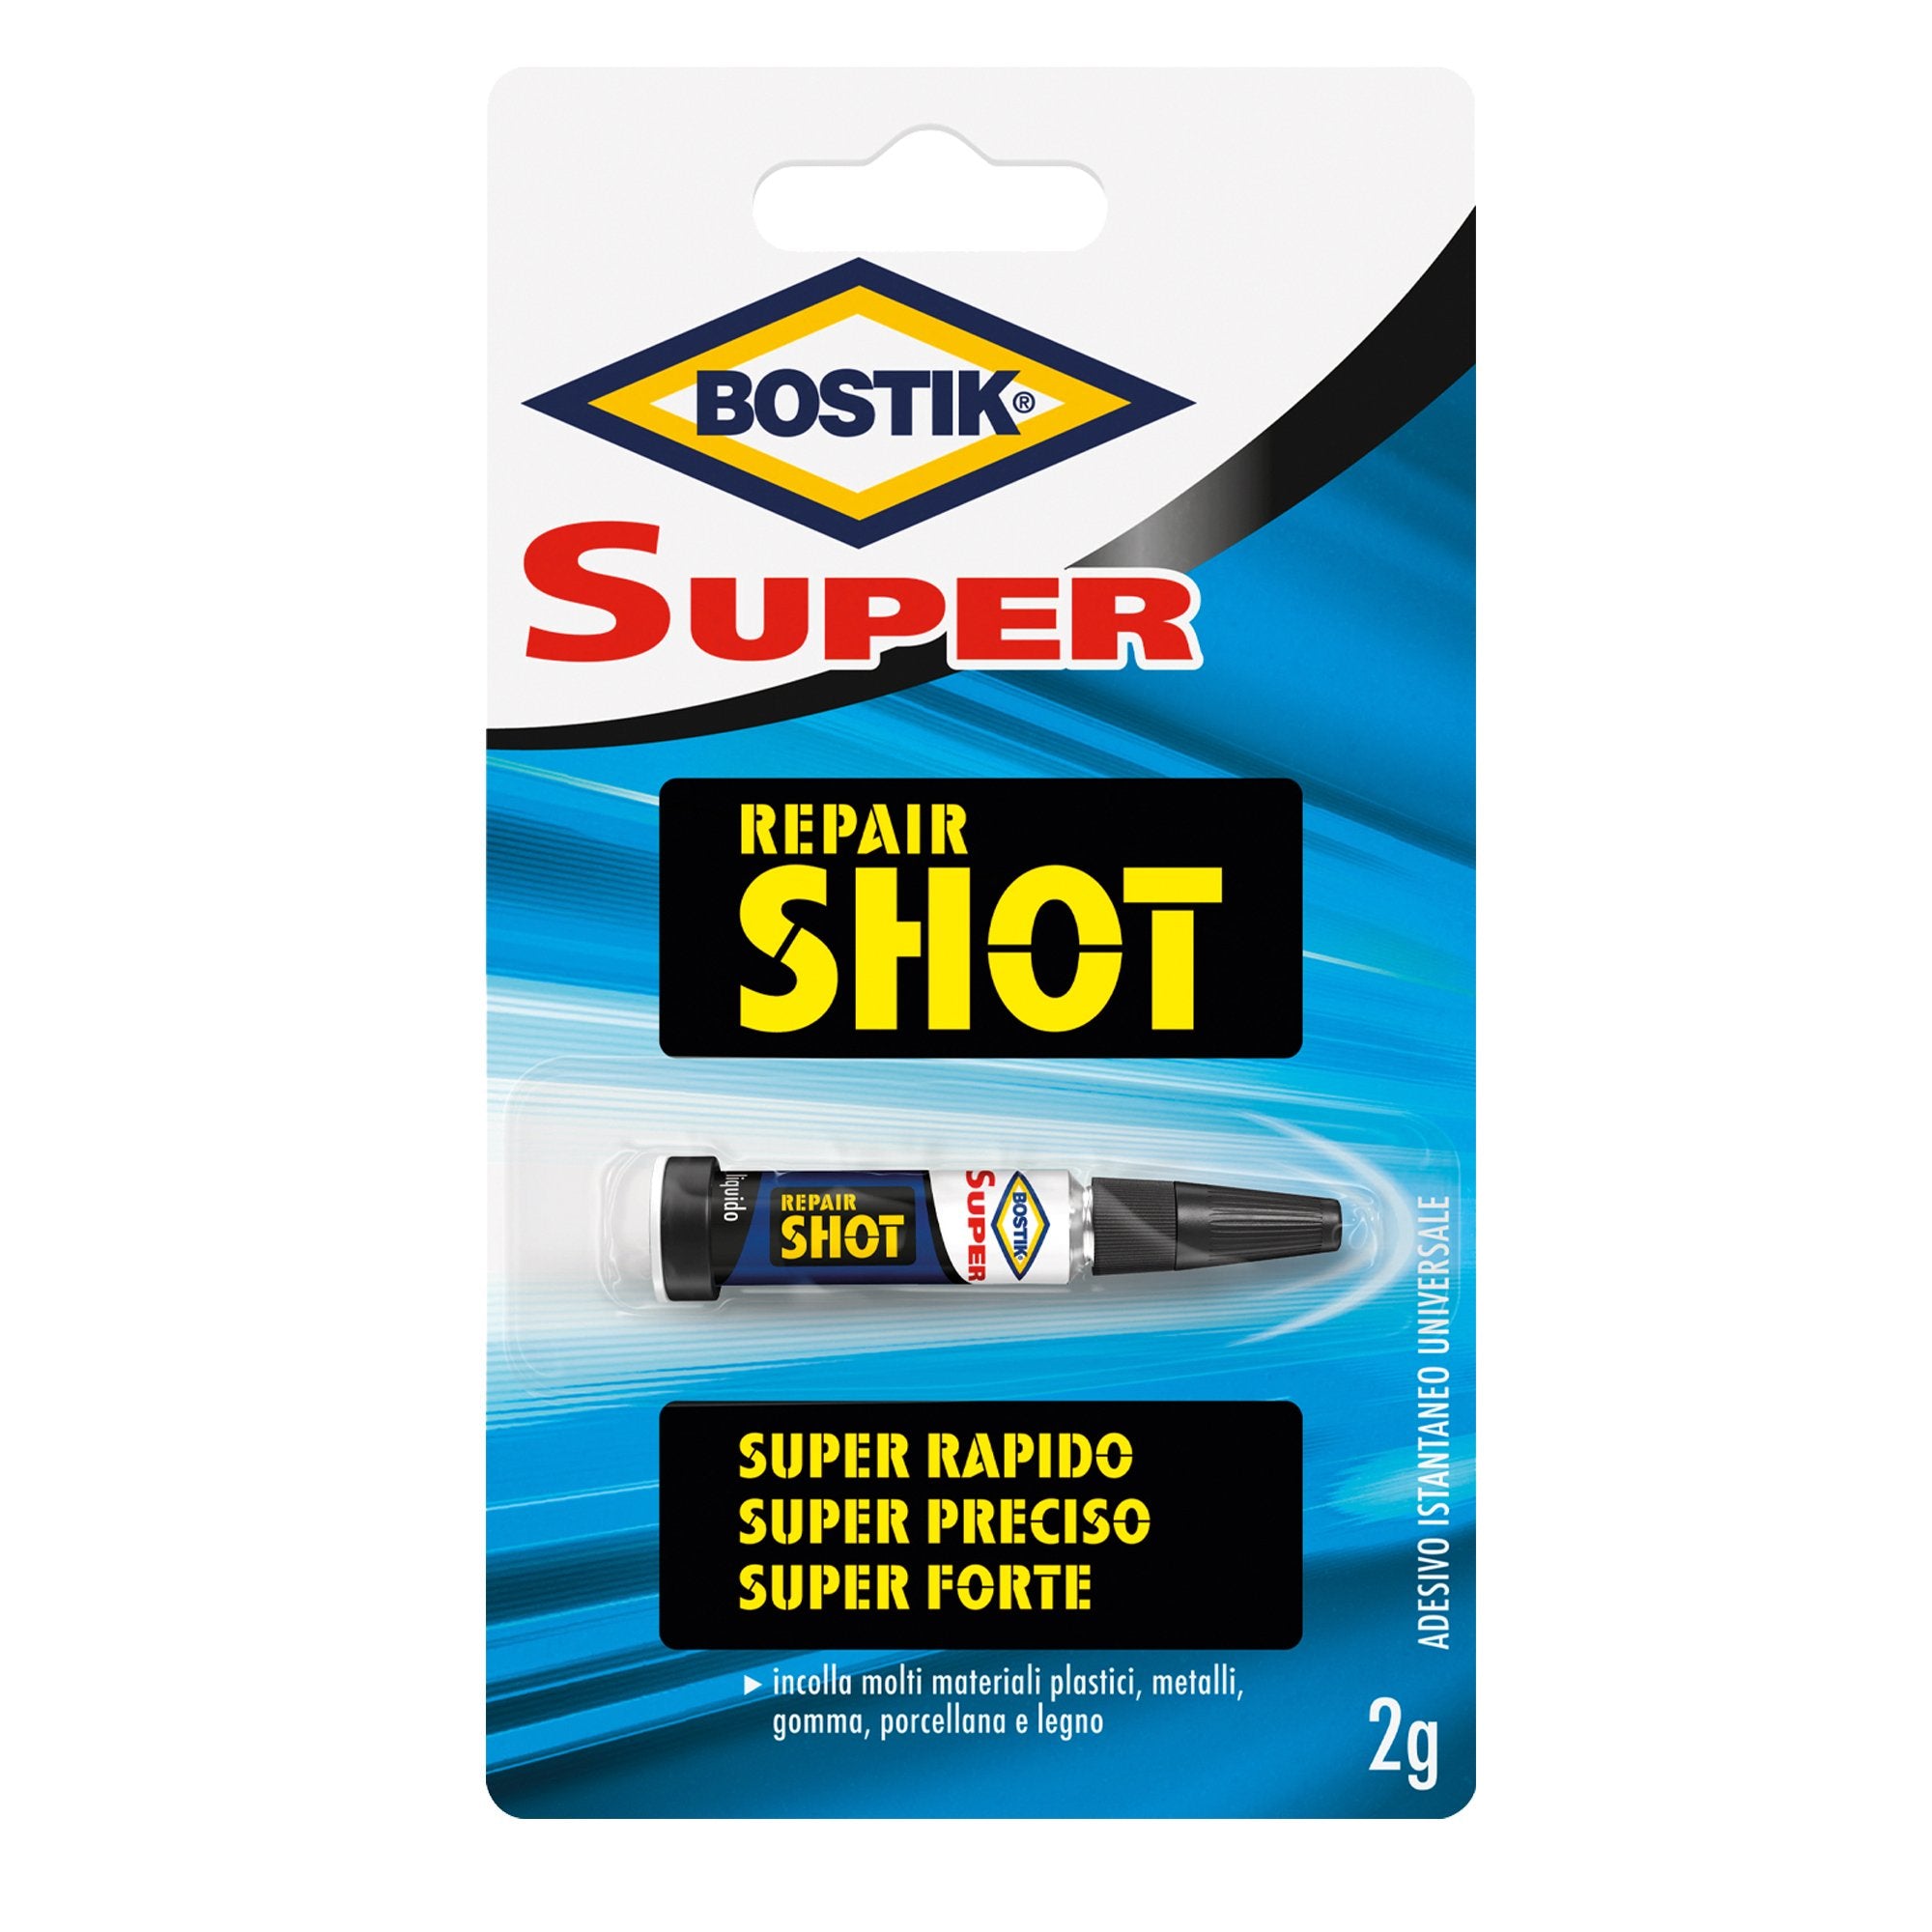 bostik-colla-istantanea-super-repair-shot-2g